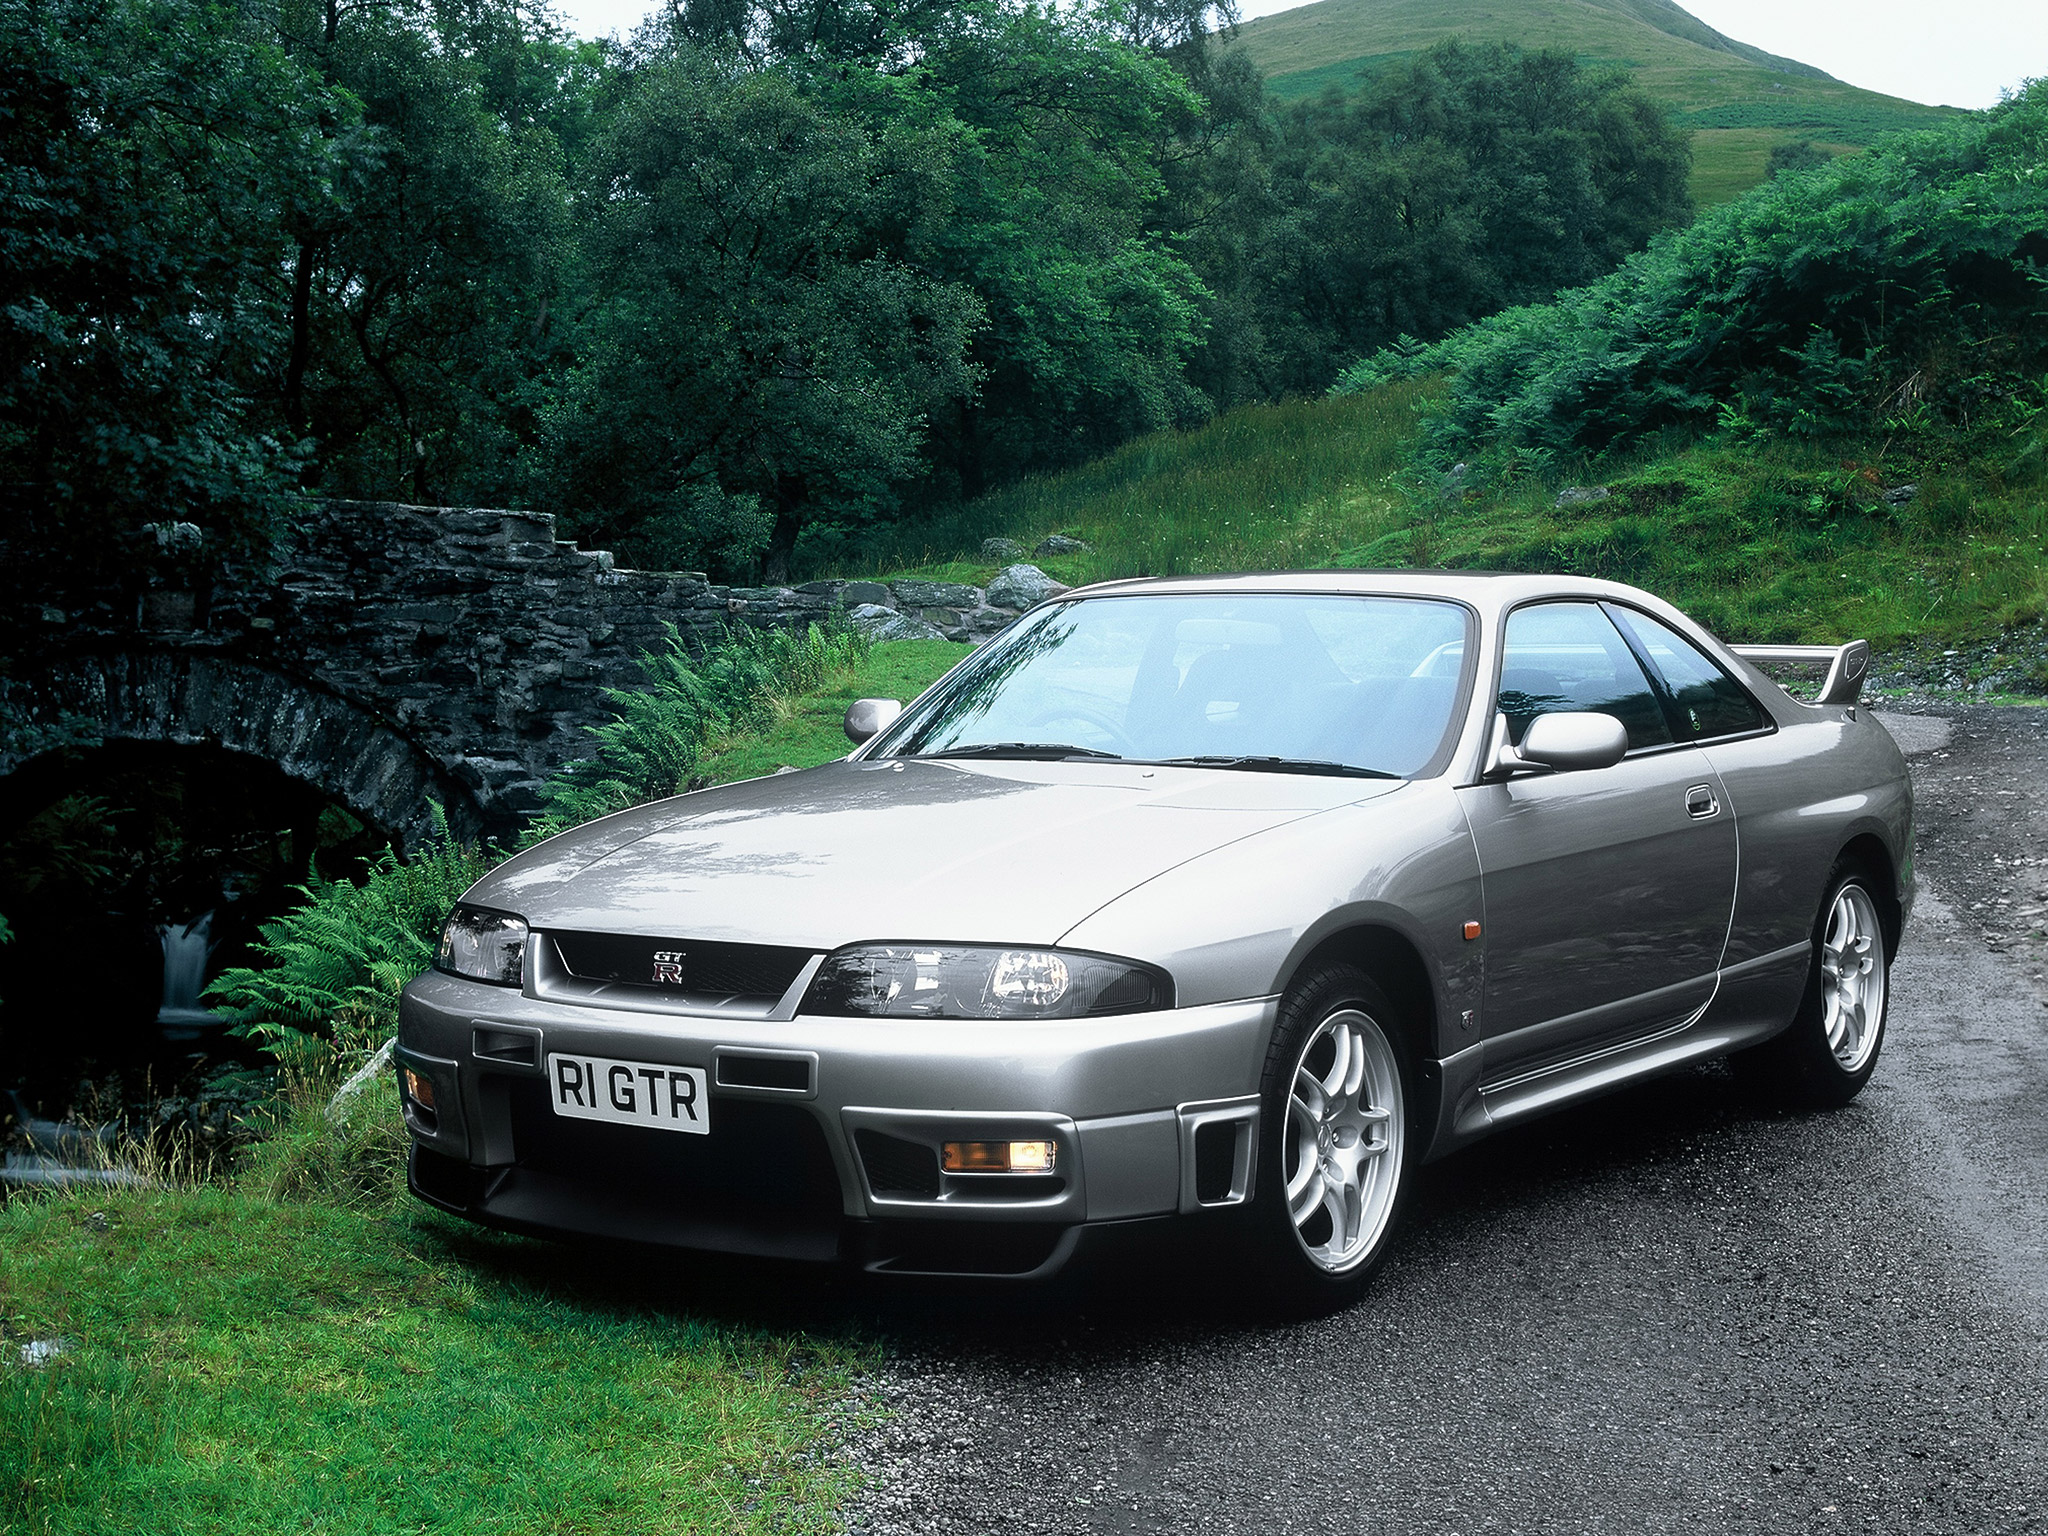  1996 Nissan Skyline GT-R V-spec Wallpaper.